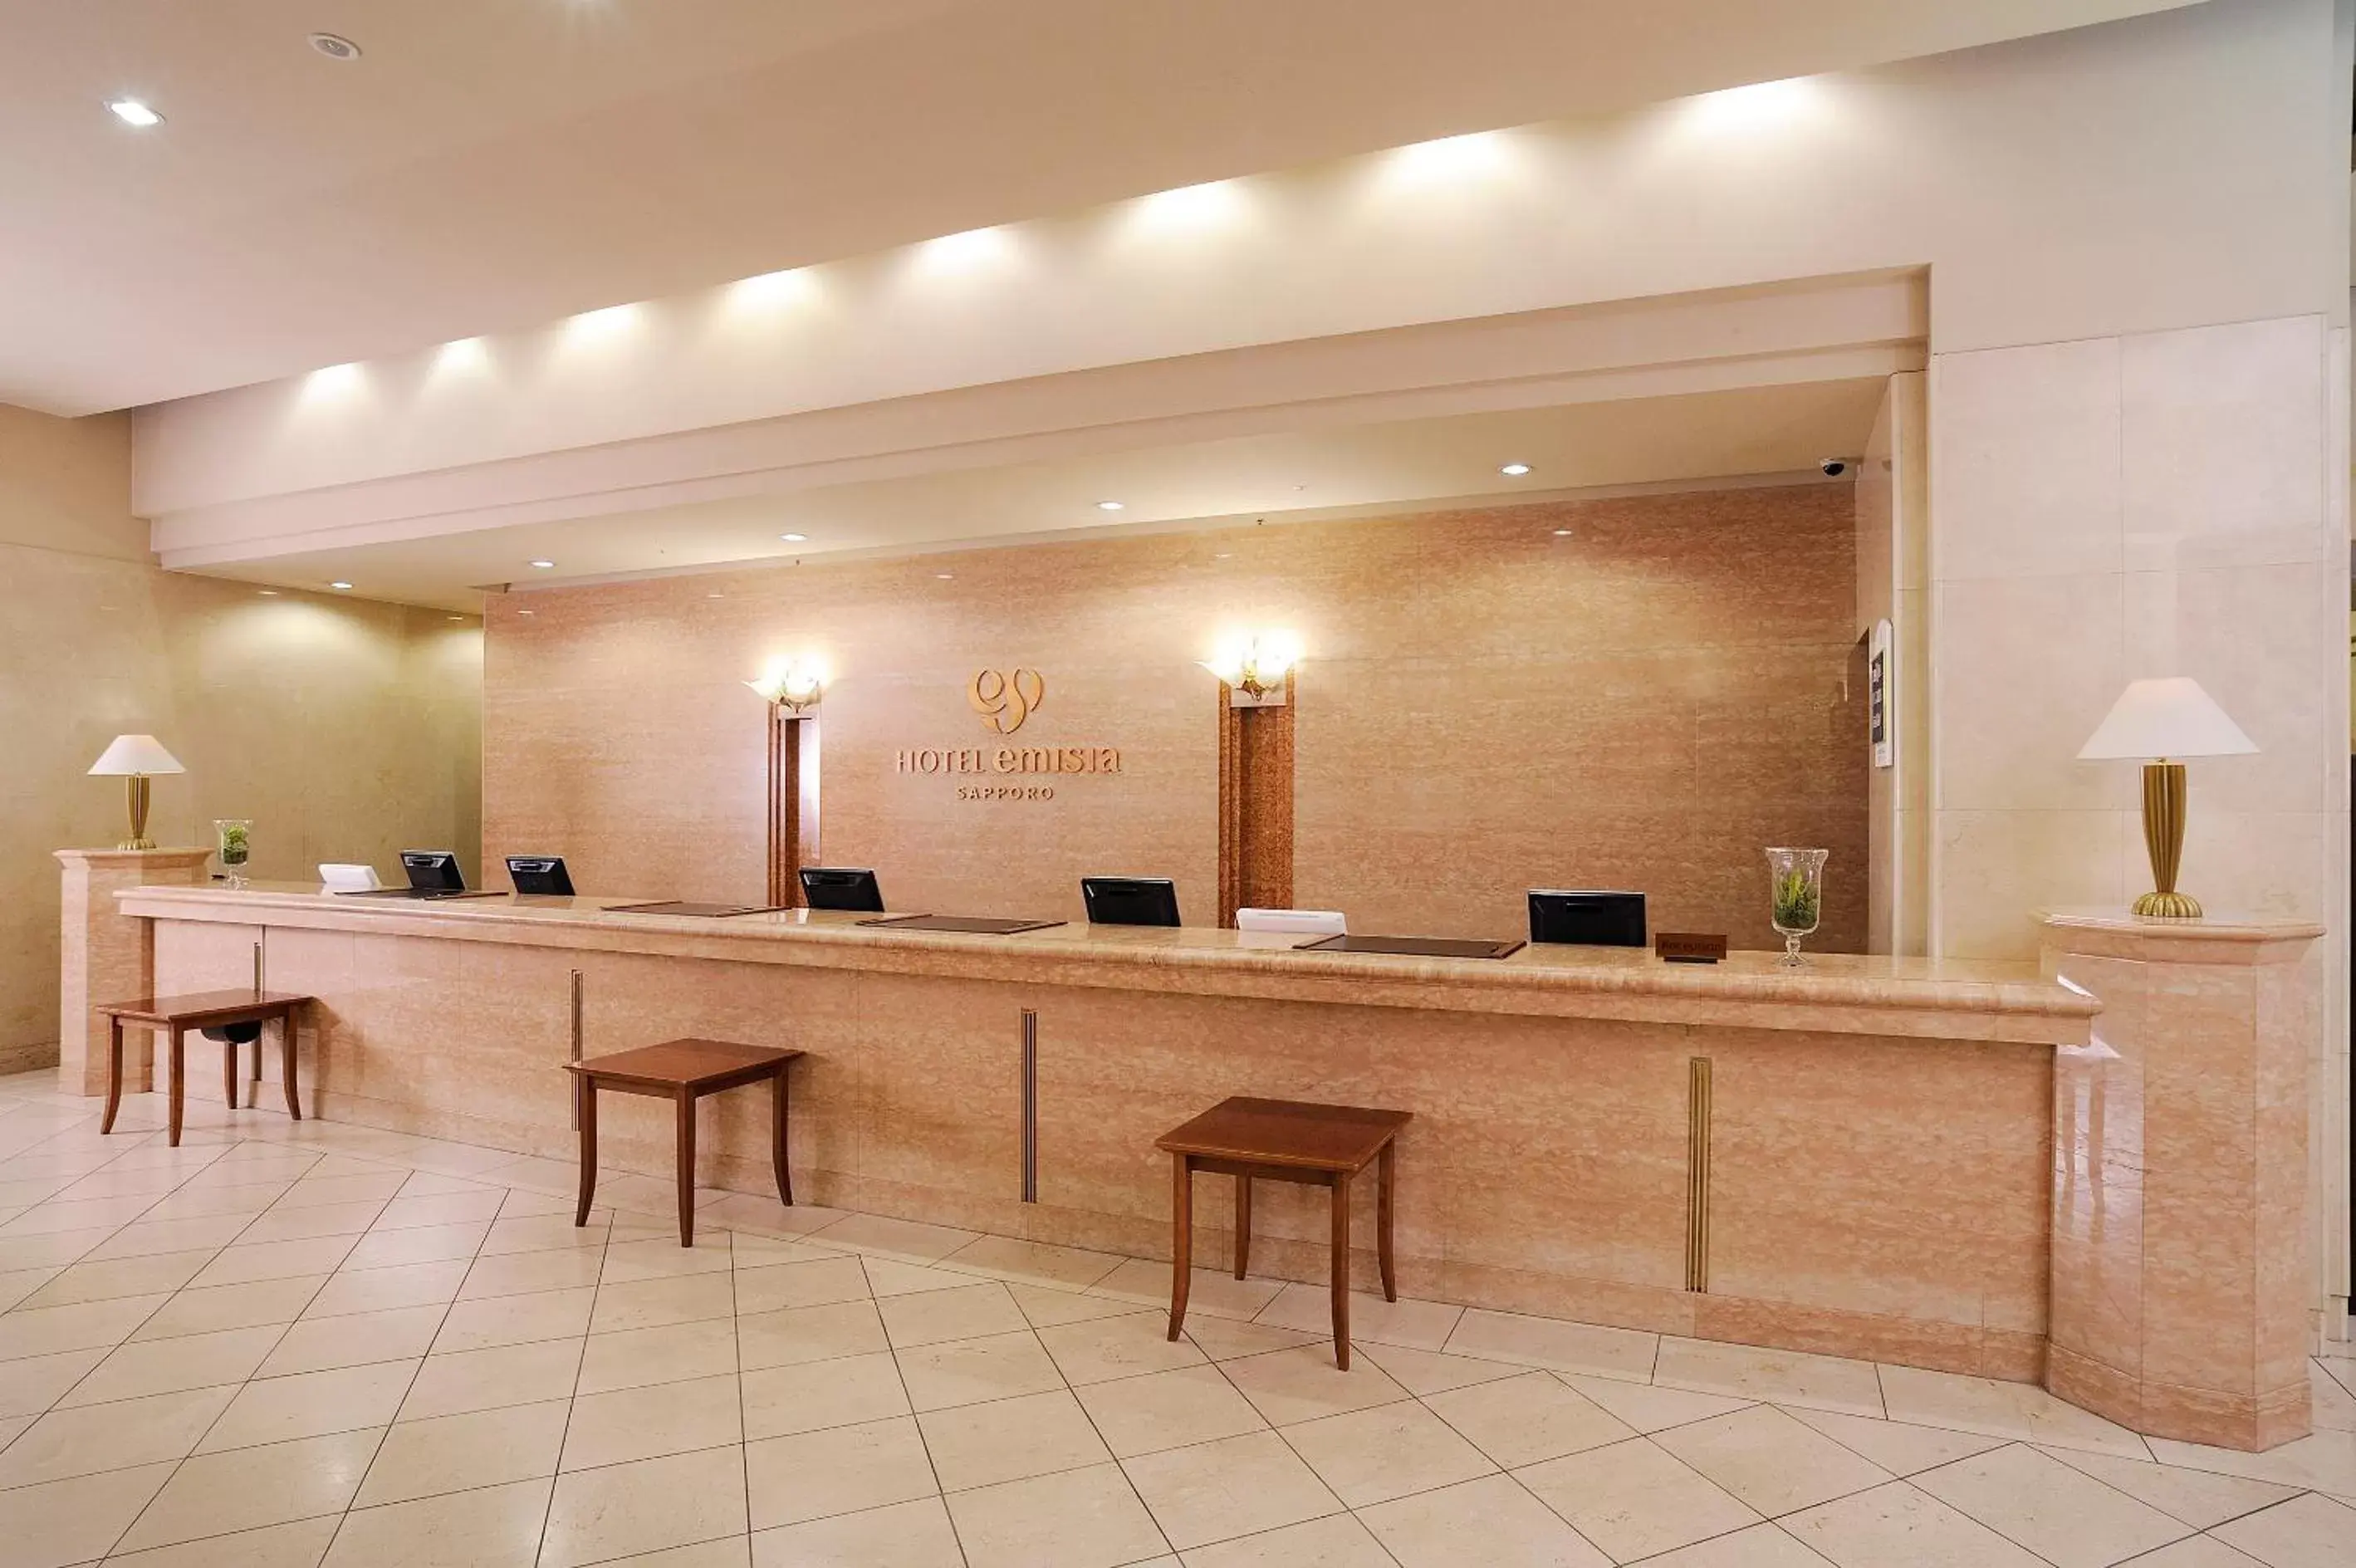 Lobby or reception in Hotel Emisia Sapporo